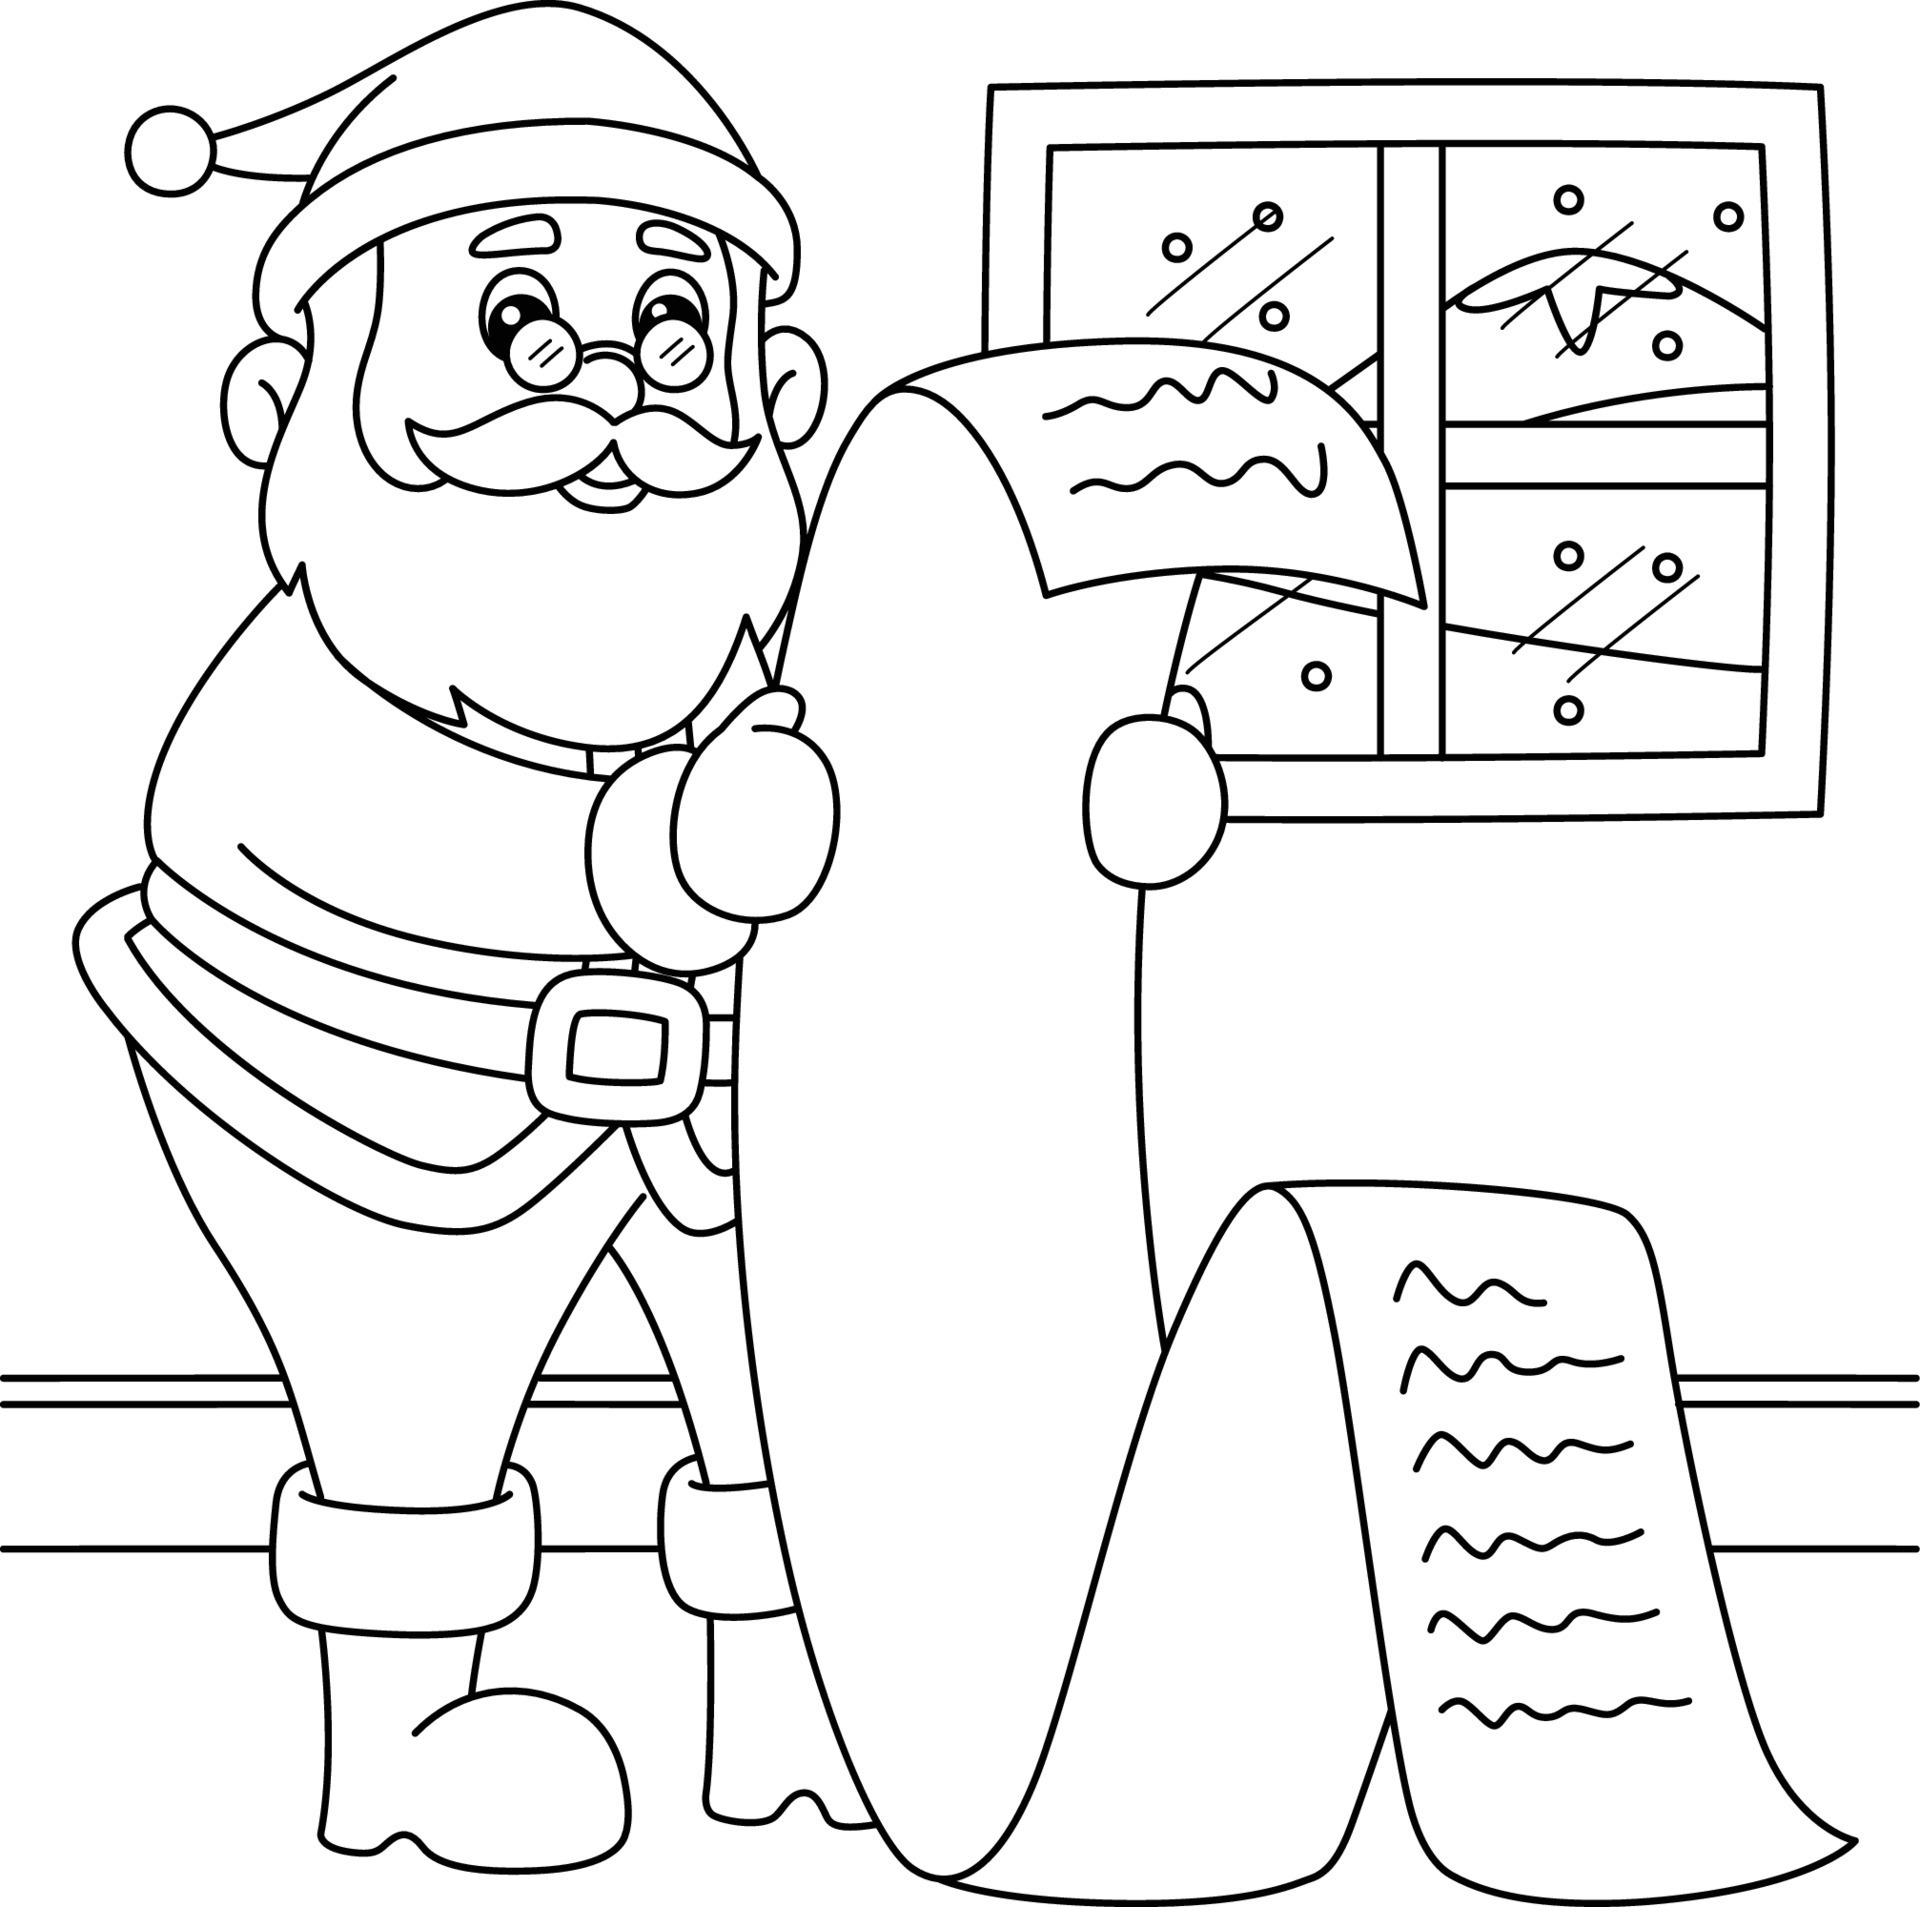 Son ratón o rata Campo Christmas Santa Claus Coloring Page for Kids 8822452 Vector Art at Vecteezy